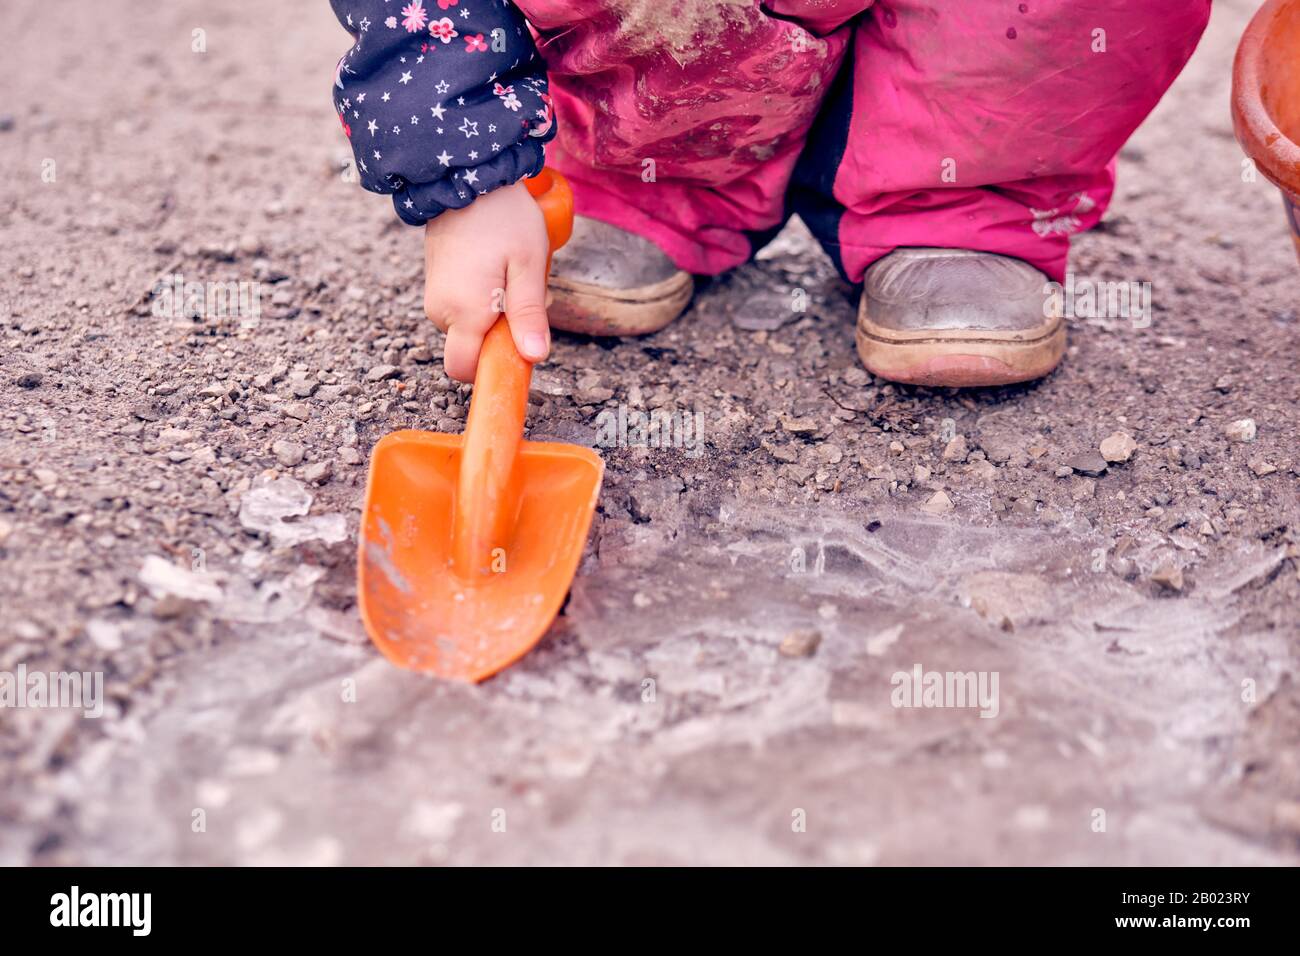 Tiefer Teil eines 4 Jahre alten Kindermädchens in schlammig schmutzig pinkfarbenen Winterhosen, die auf dem Eis an einer gefrorenen Pfütze mit einer orangefarbenen Schaufel hocken und arbeiten. Stockfoto